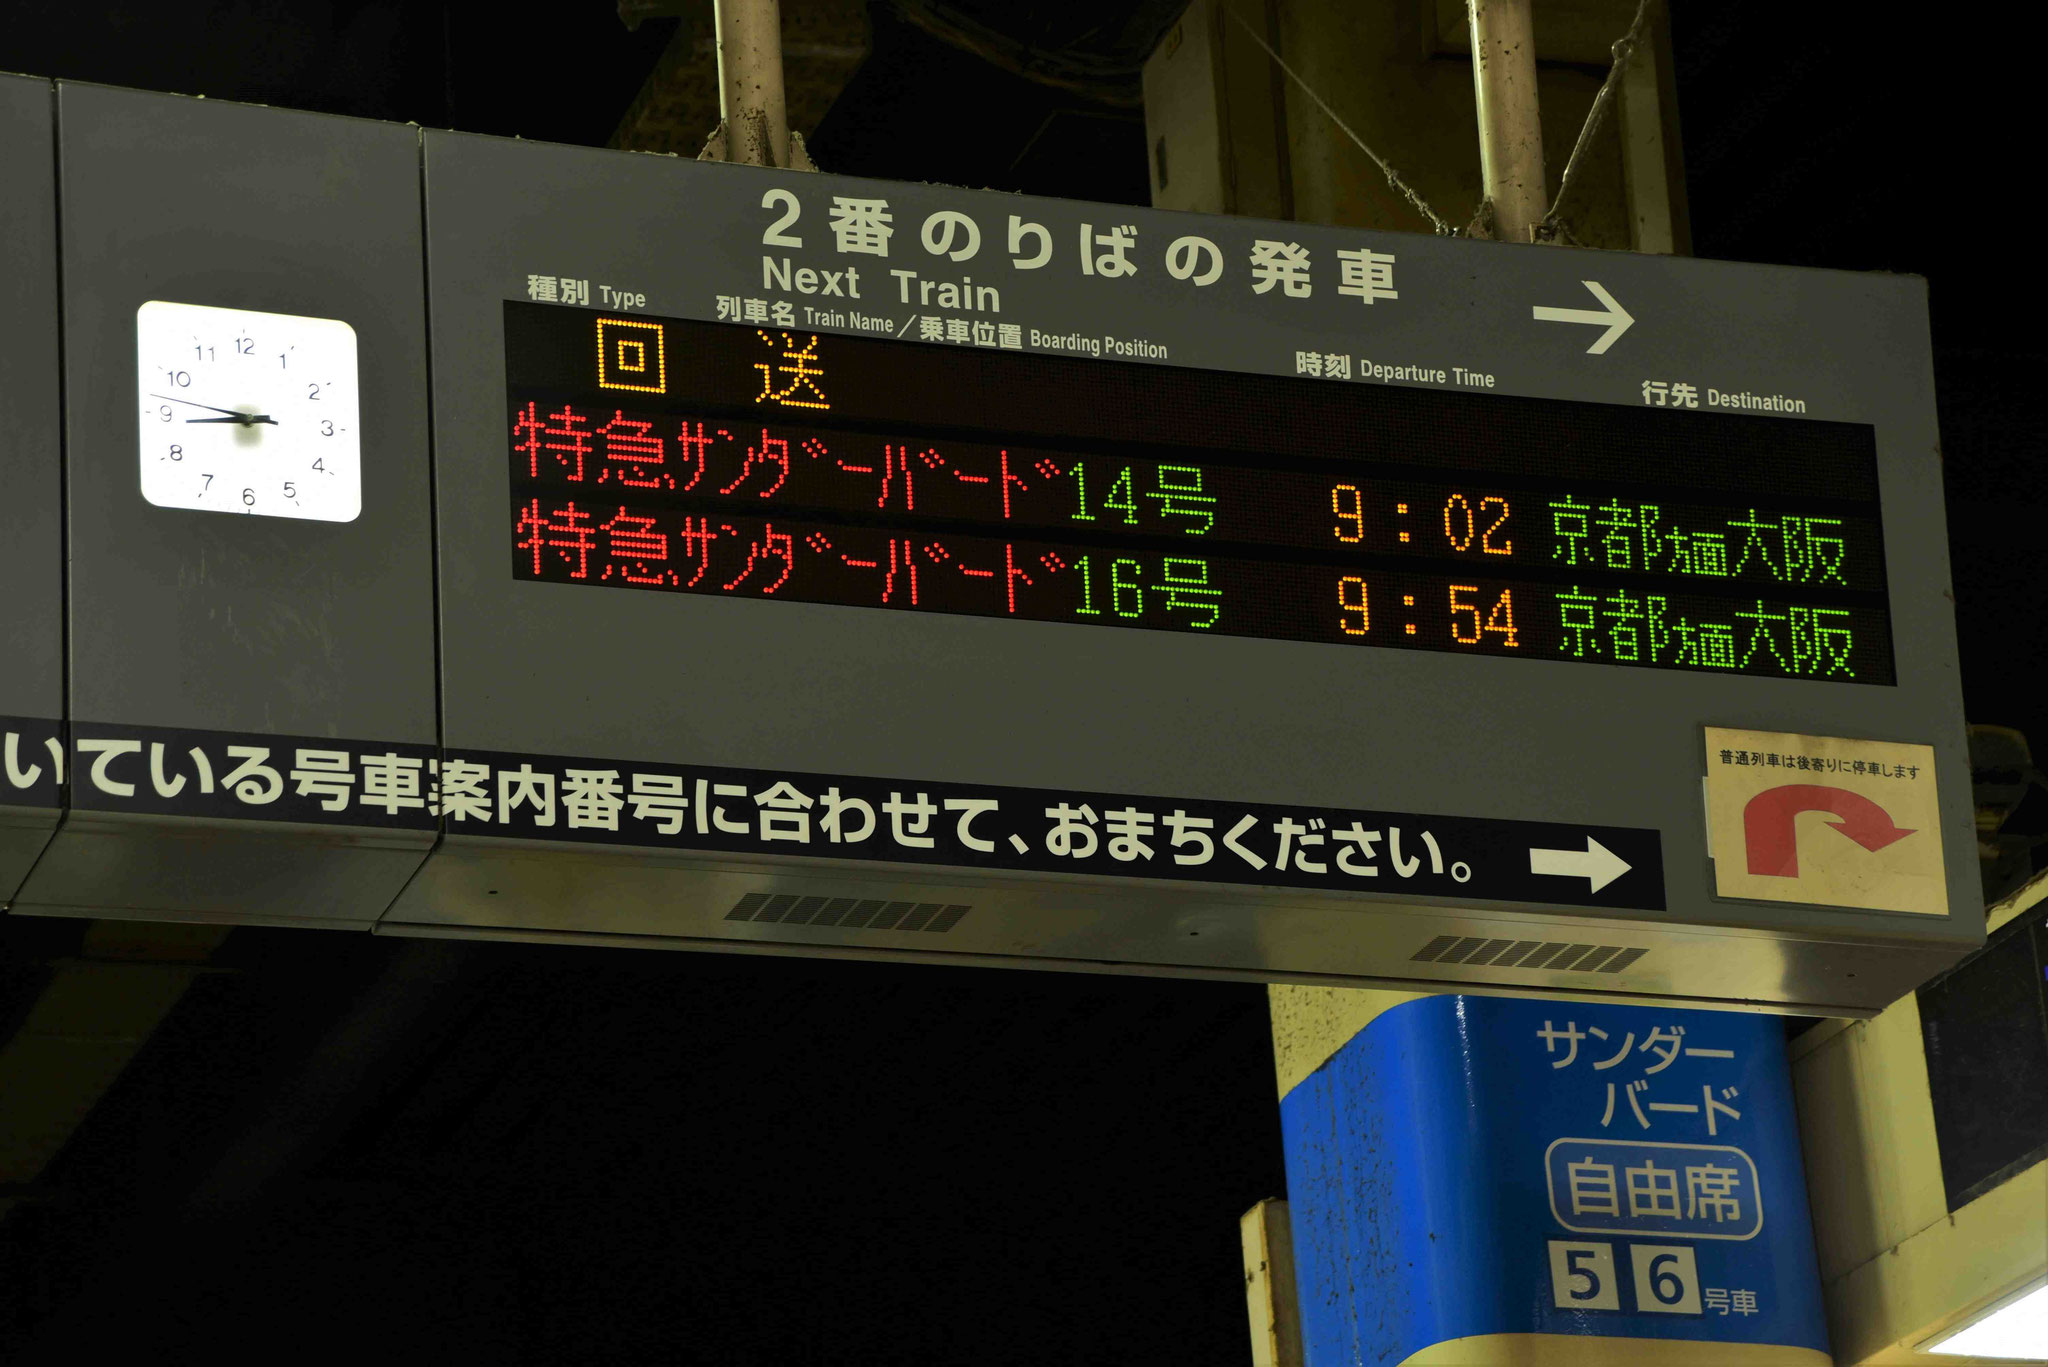 Hinweisschild beim Zwischenstop in einem Bahnhof